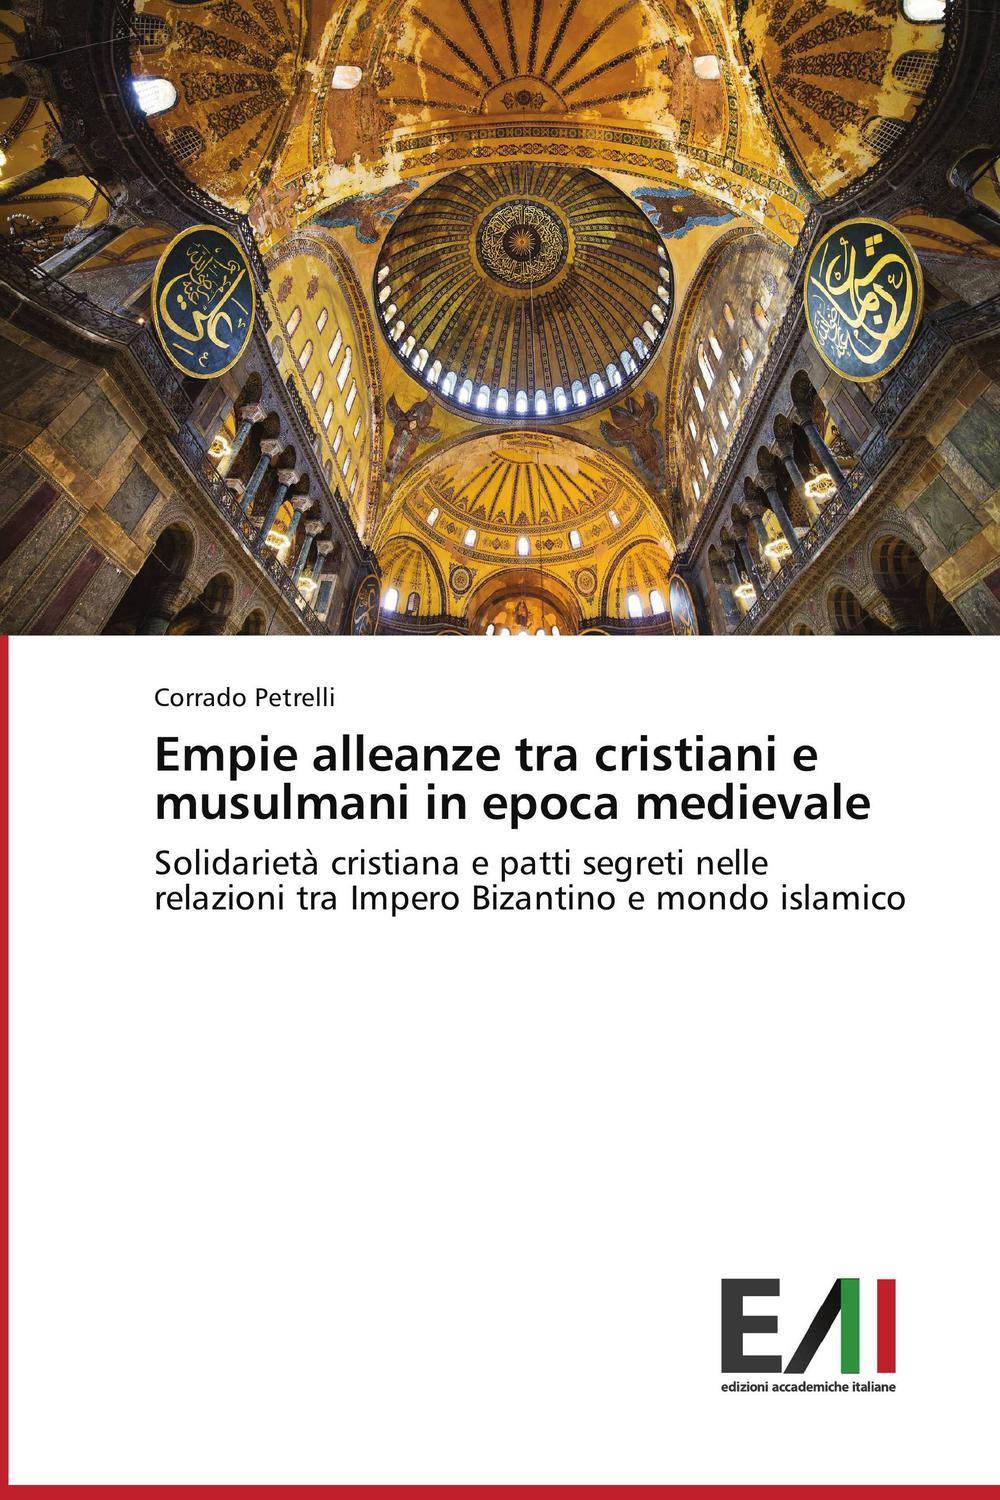 Empie alleanze tra cristiani e musulmani in epoca medievale - Corrado Petrelli